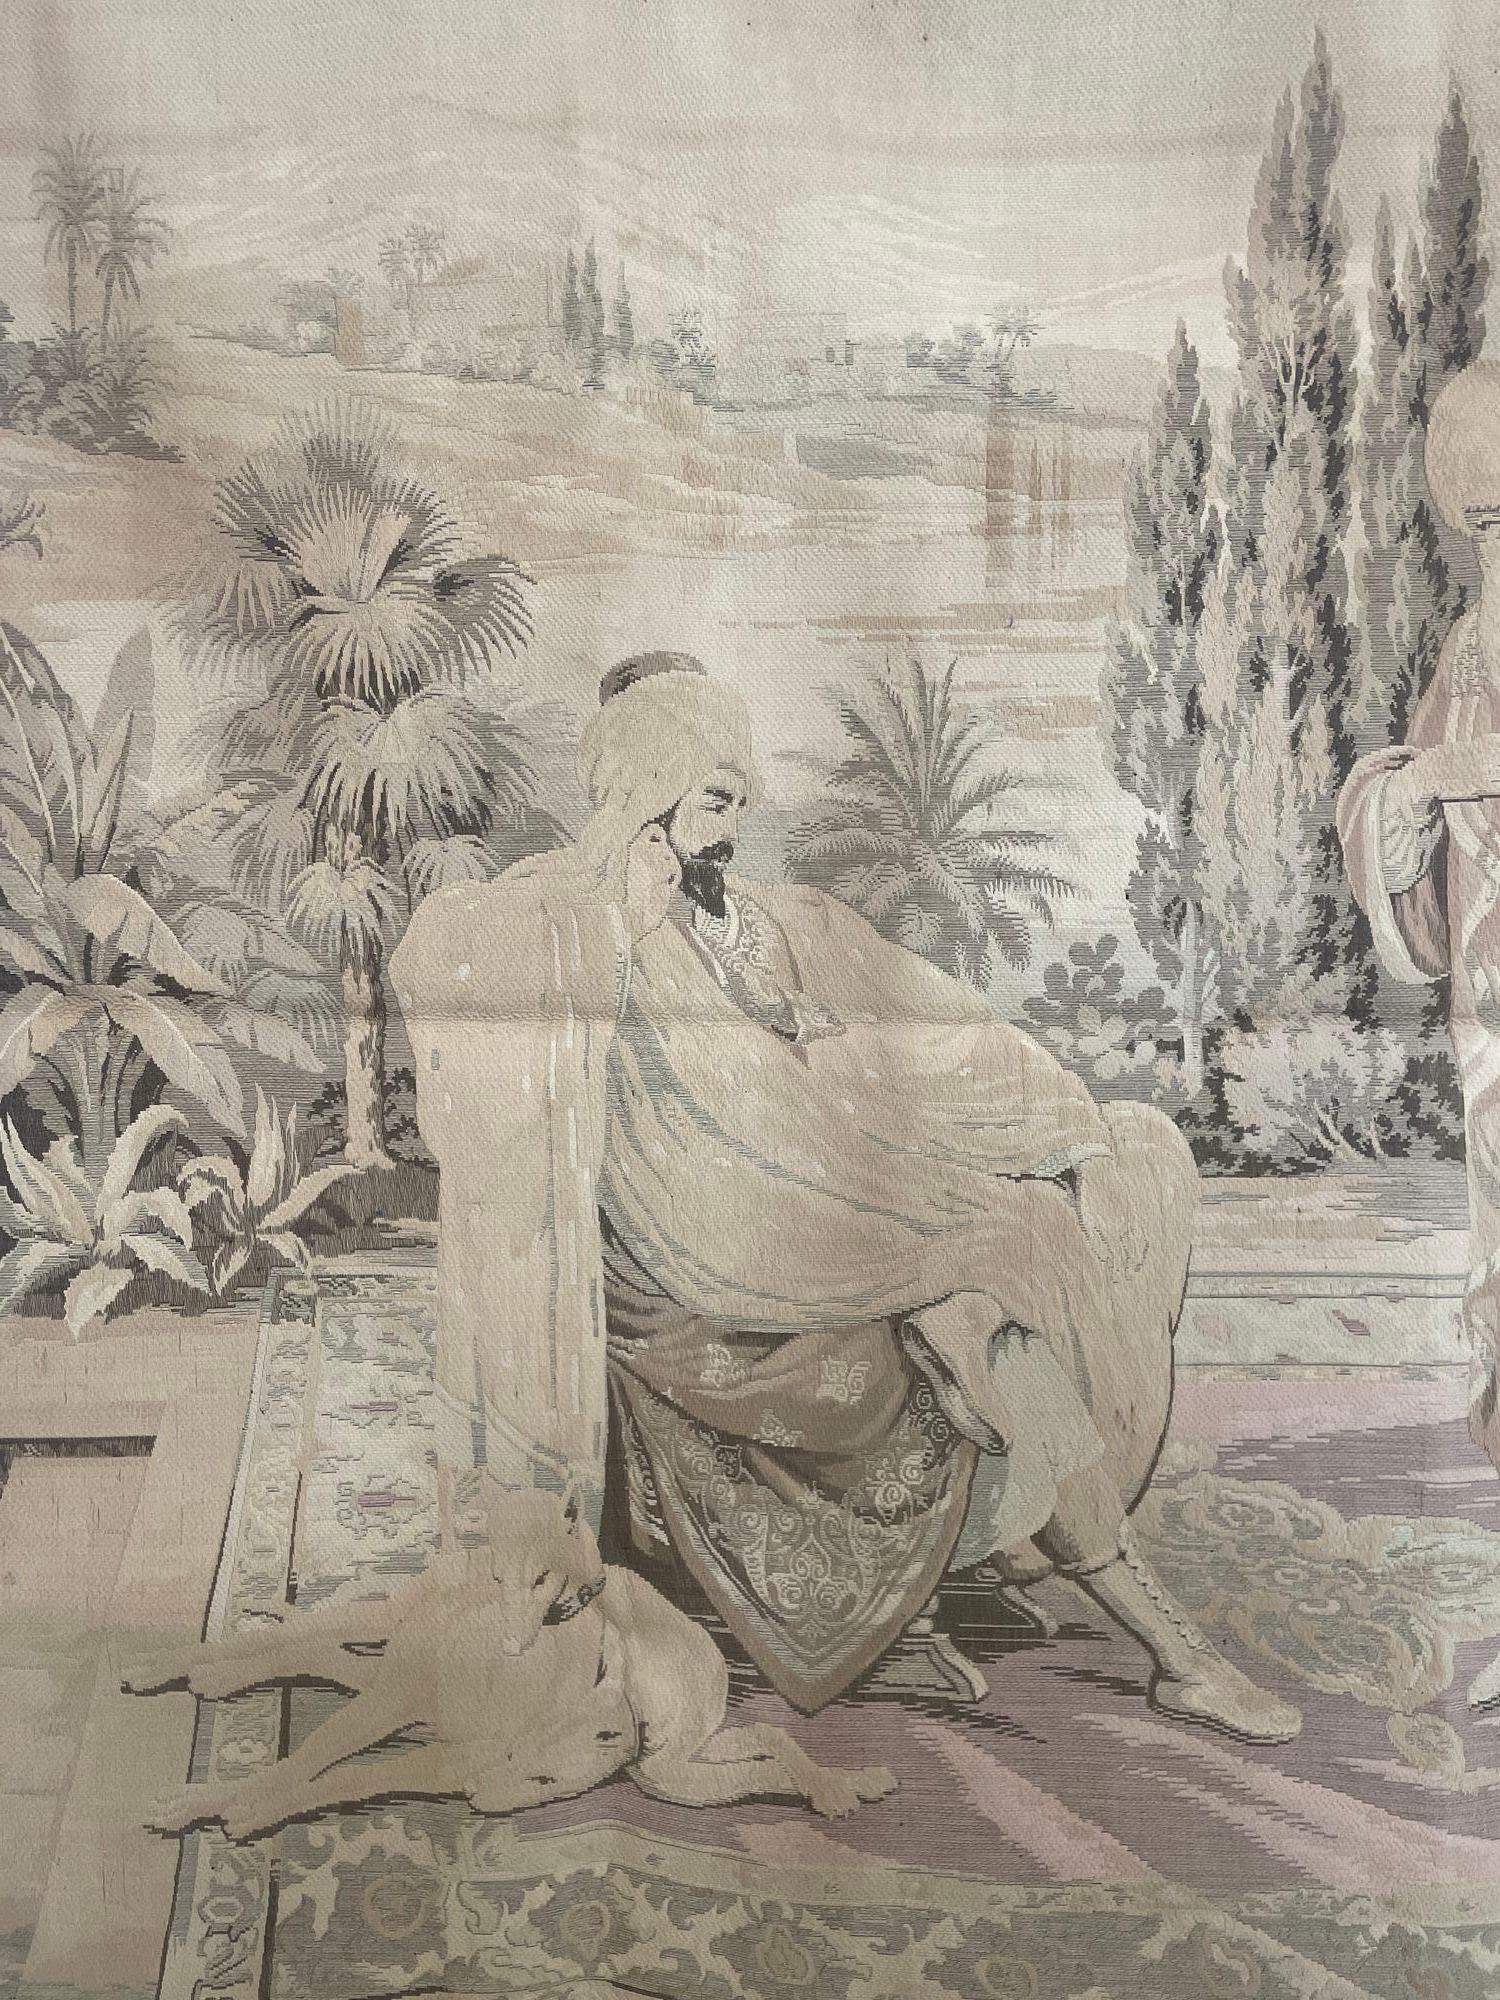 Großer europäischer Wandteppich im Aubusson-Stil mit einer orientalischen Szene aus dem 19. Jahrhundert, die einen arabischen Sultan und andere Figuren sowie maurische Architektur aus dem Nahen Osten im Hintergrund zeigt.
Wahrscheinlich eine Szene